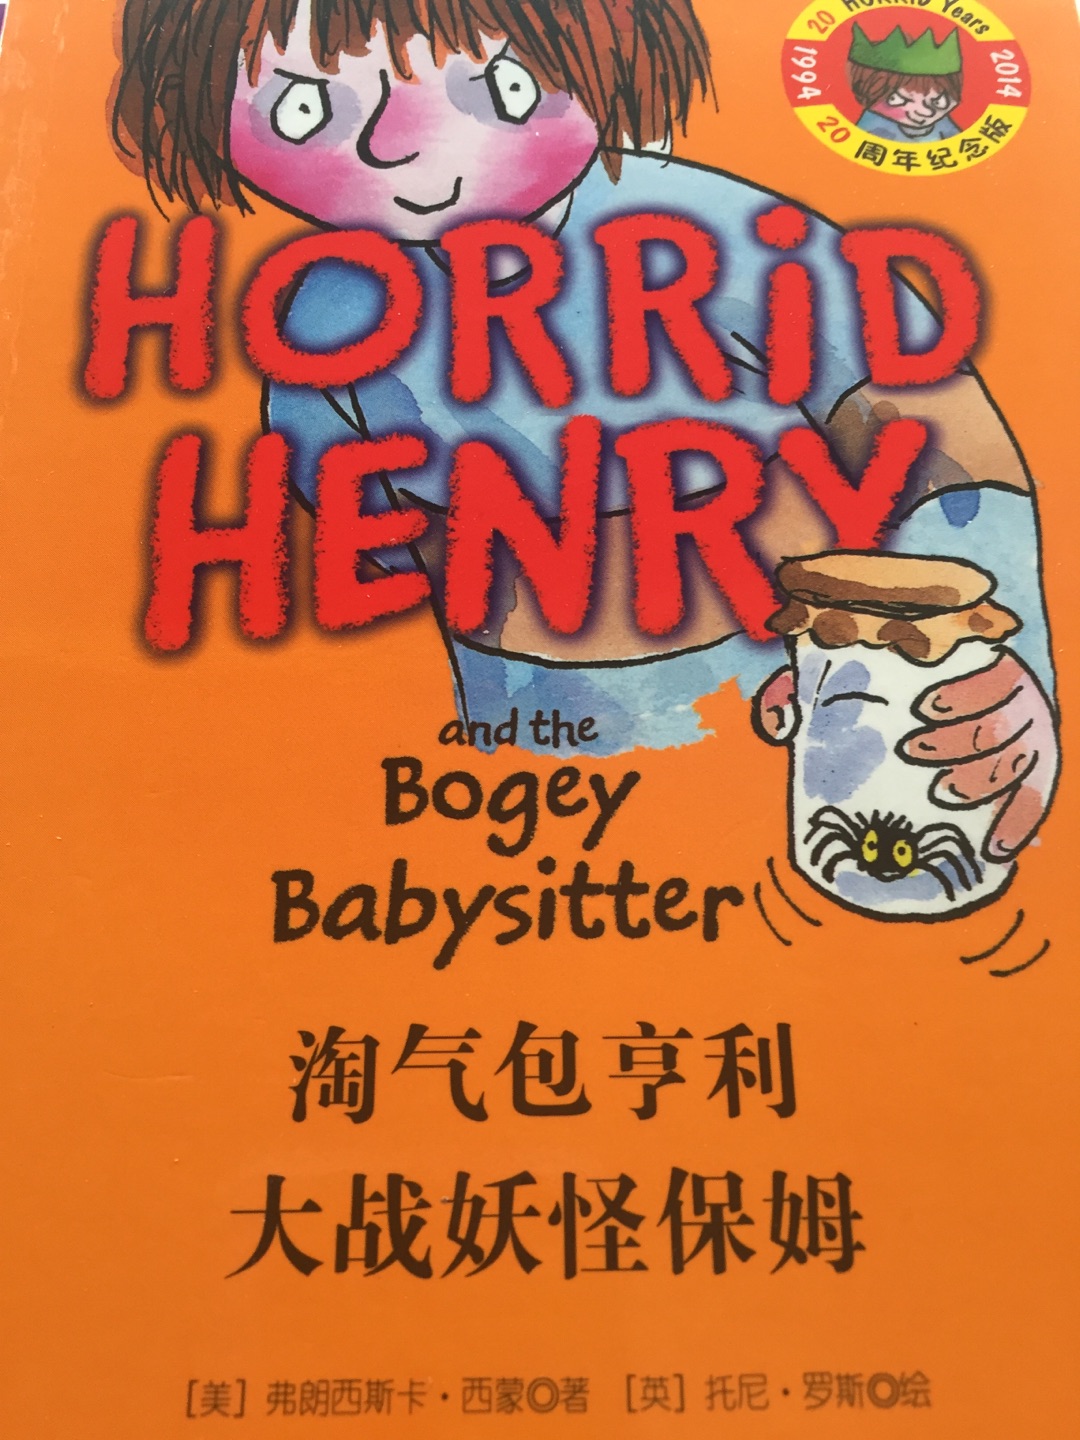 书的前半部分是中文，后半部分是英文，质量不错，价格实惠。